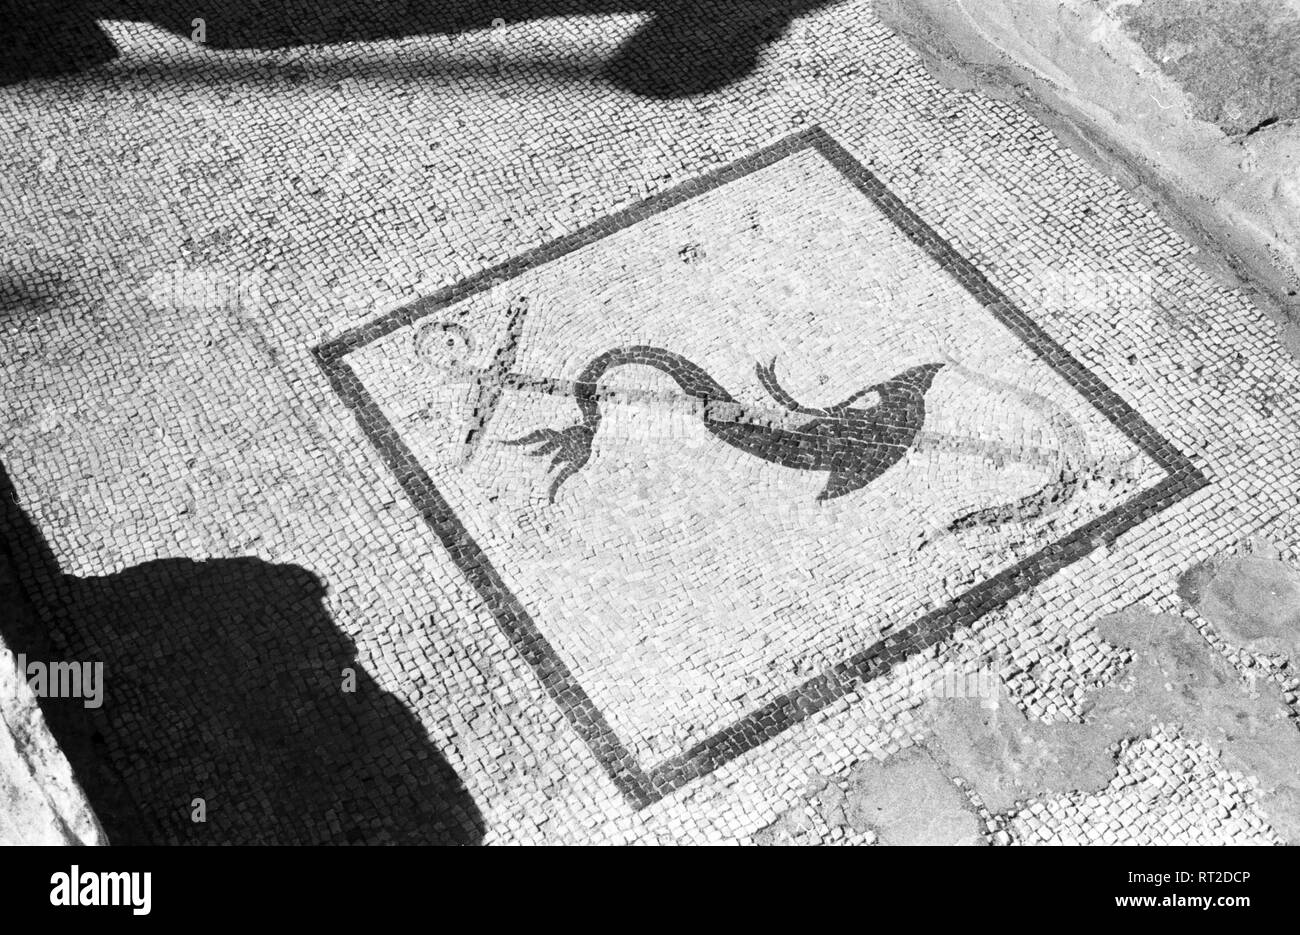 Griechenland, Greece - Ein Mosaik auf der Insel Delos, Griechenland, stellt einen Delphin dar, der sich um einen Anker windet, Griechenland, 1950er Jahre. An ancient mosaic at the island of Delos depicting a dolphin winding around an anchor, Greece, showing, to dolphins, 1950s. Stock Photo